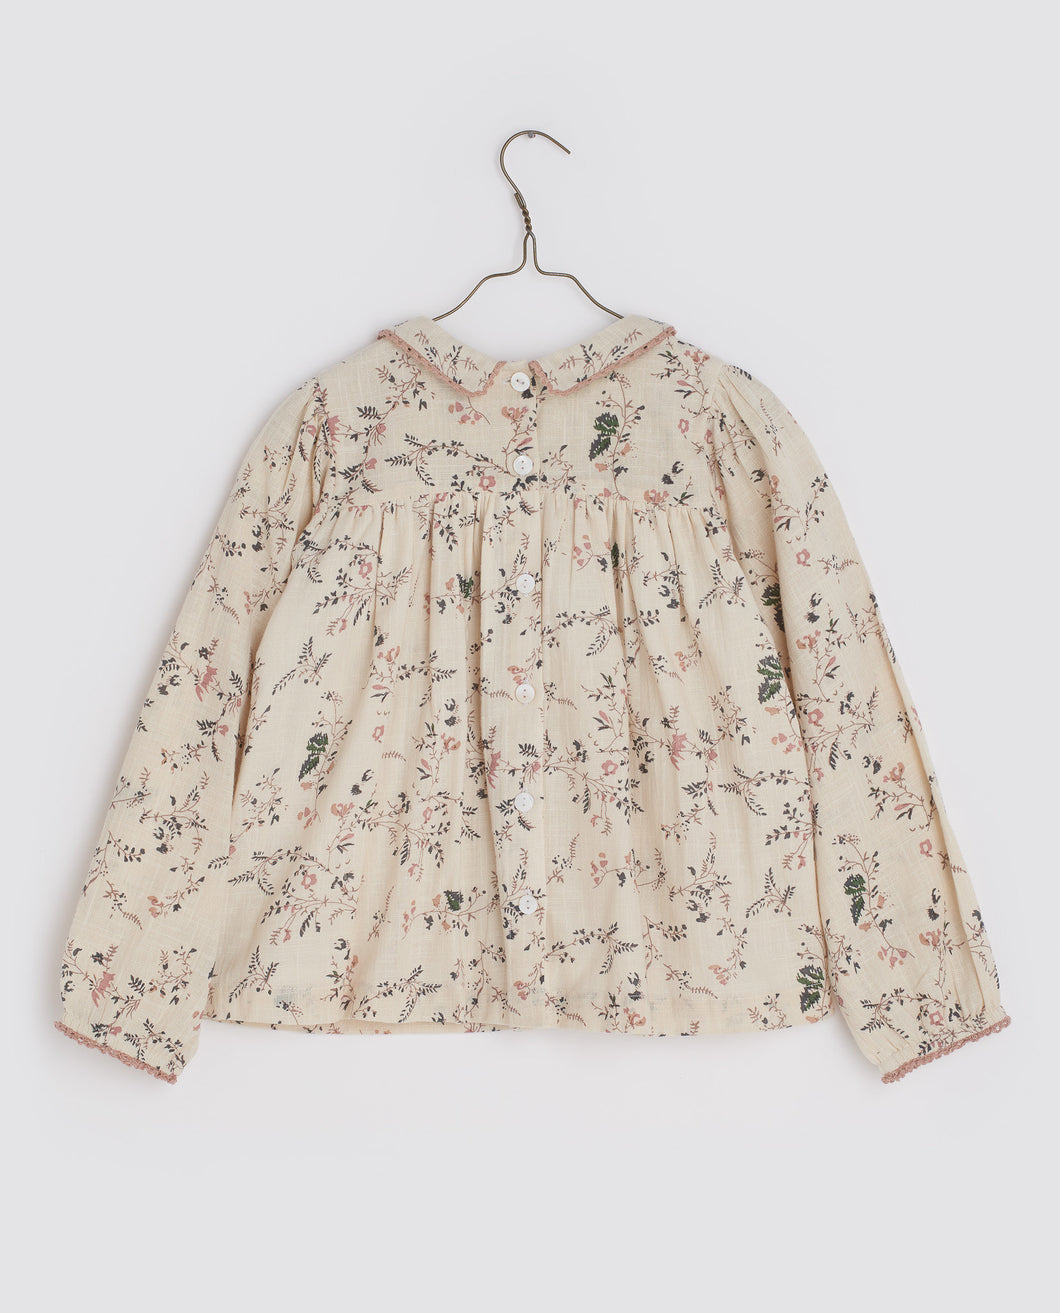 Little Cotton Clothes Emma Blouse - Mallow floral - 18/24M, 5/6Y